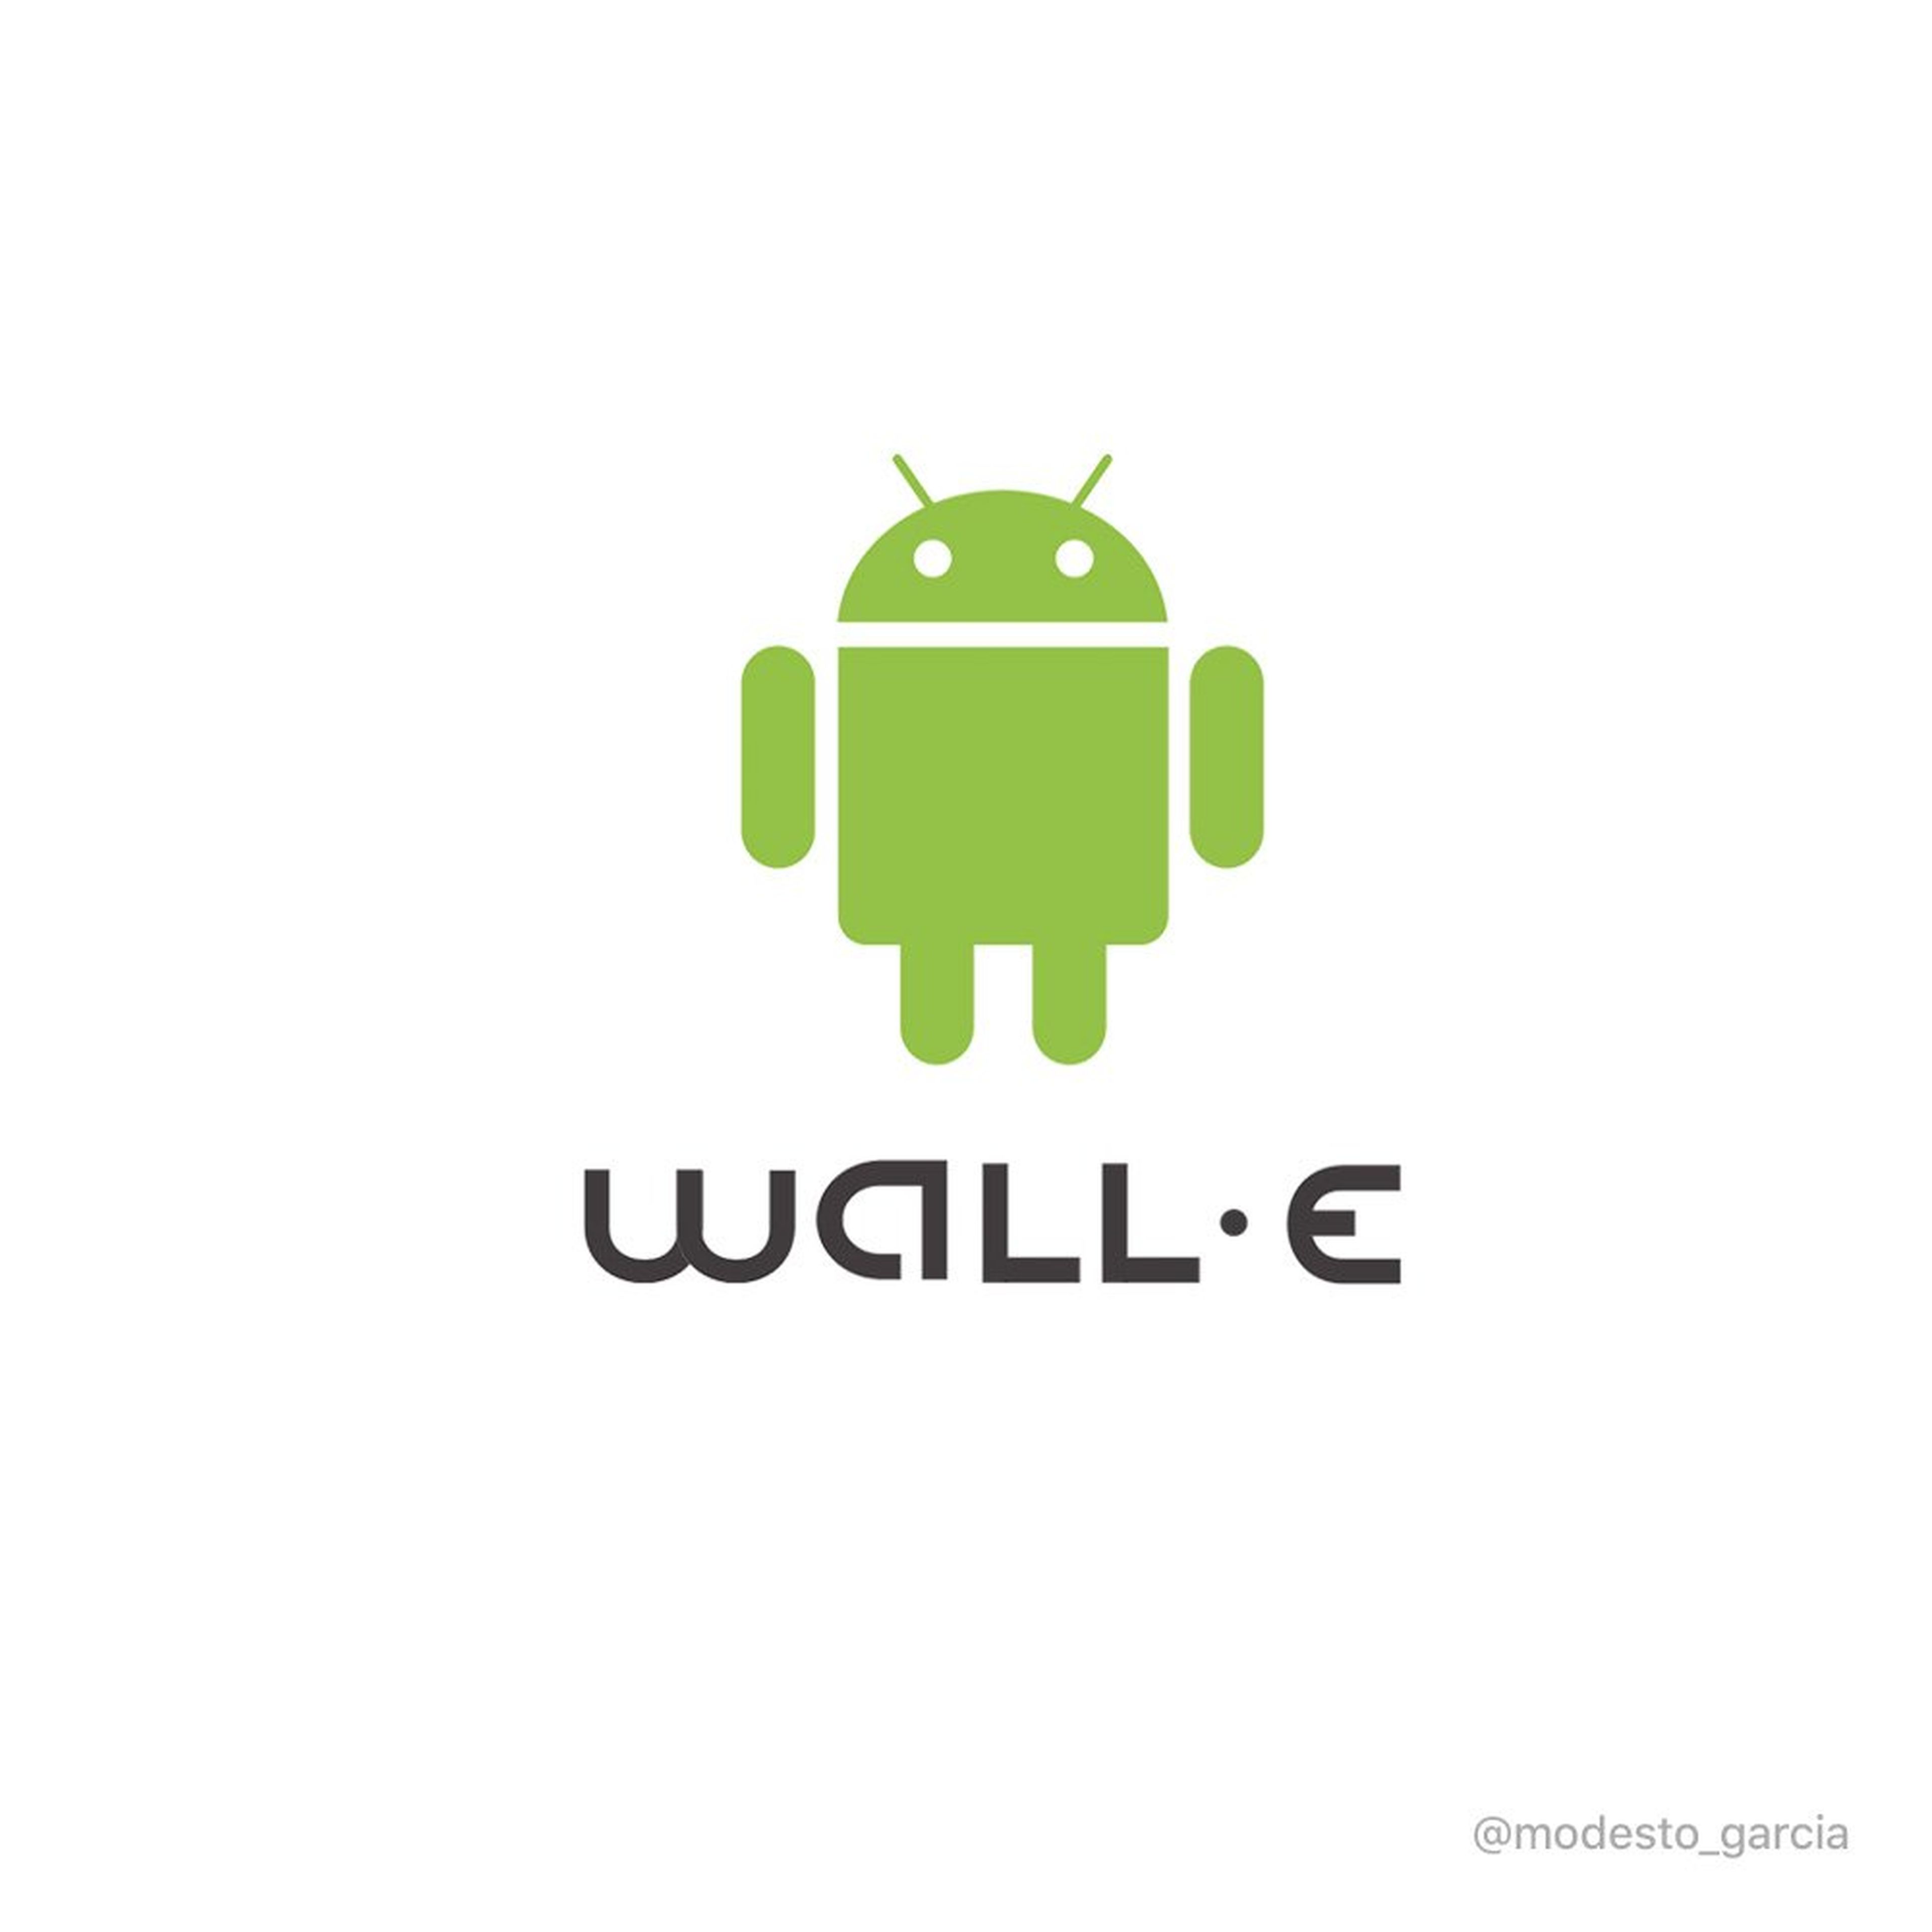 Si Wall-e fuera un logo